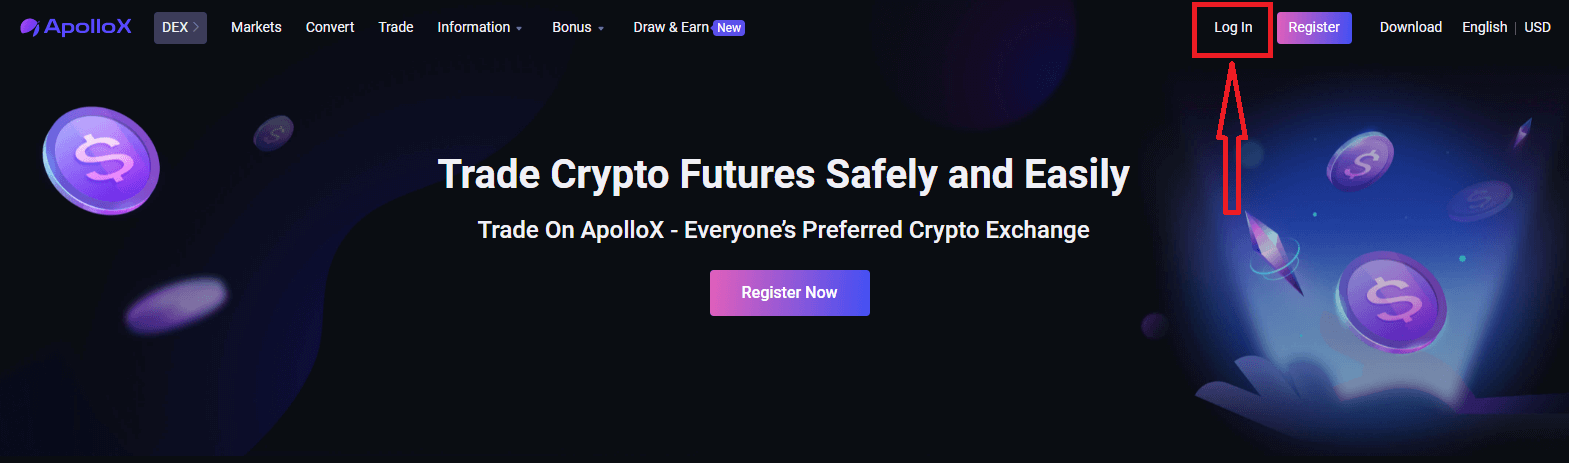 Как войти и начать торговать криптовалютой на ApolloX